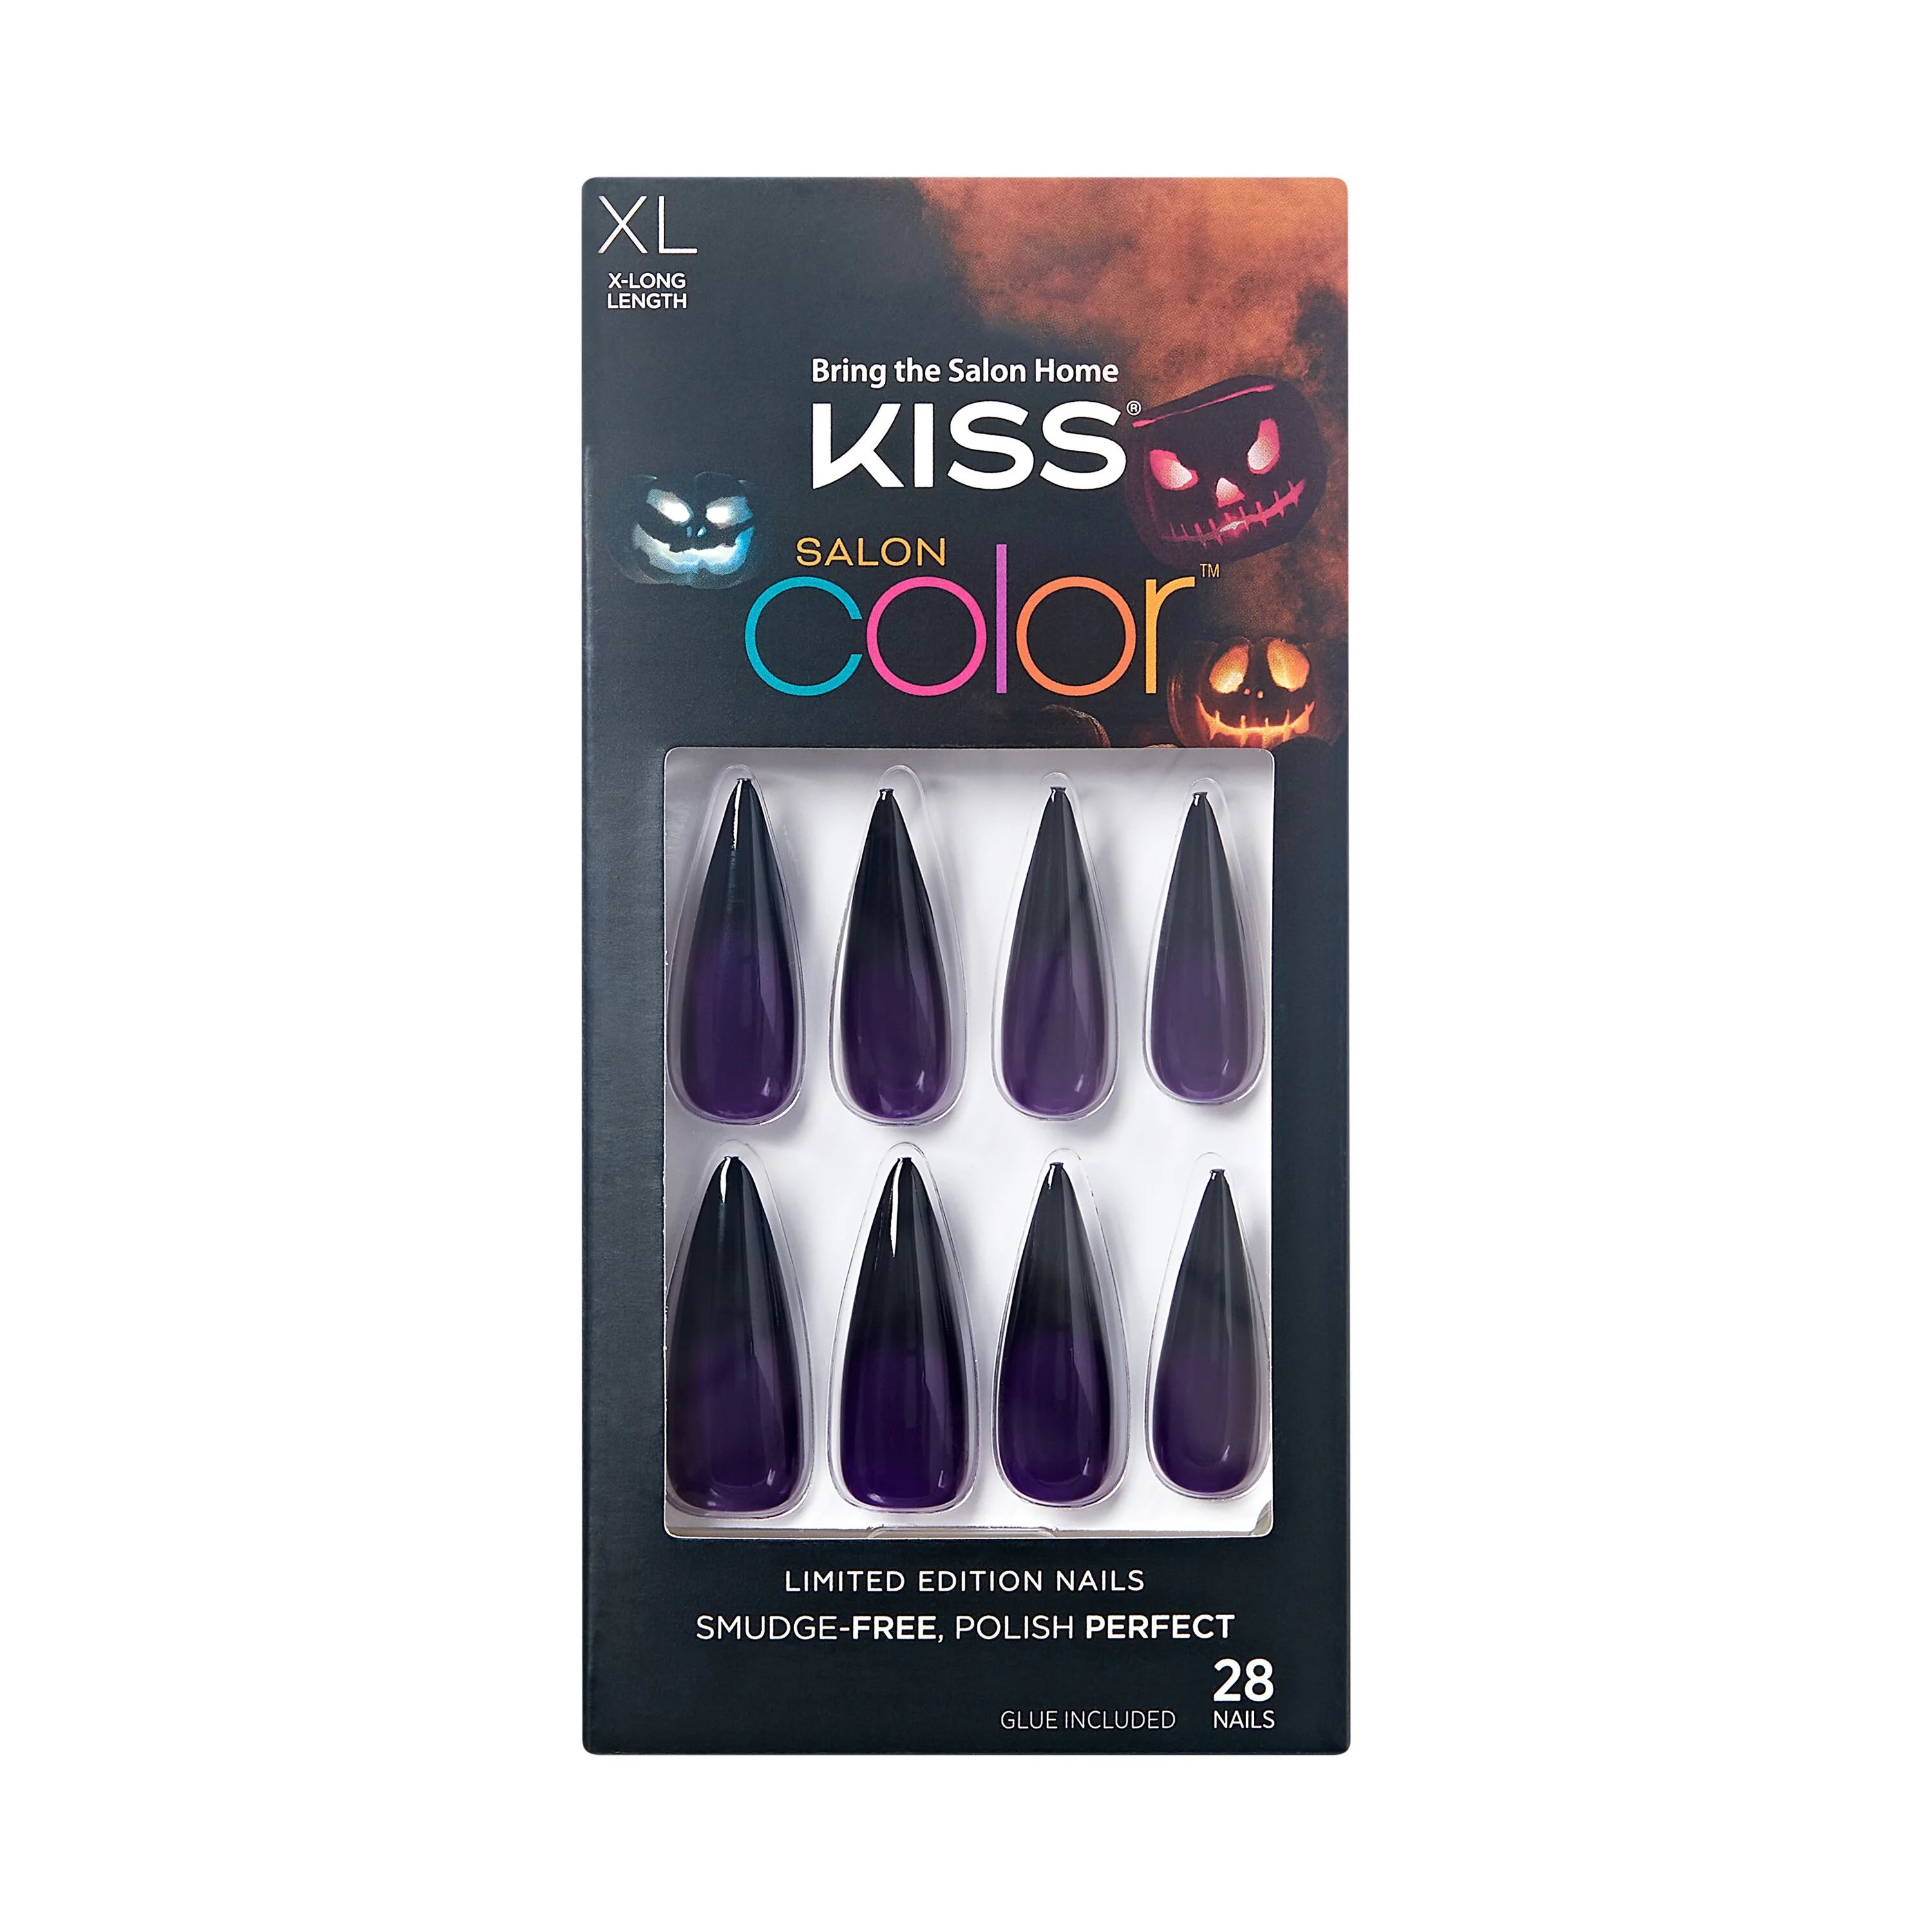 KISS Salon Color Halloween Nails, ‘Black Cats’, 28 Count | Walmart (US)